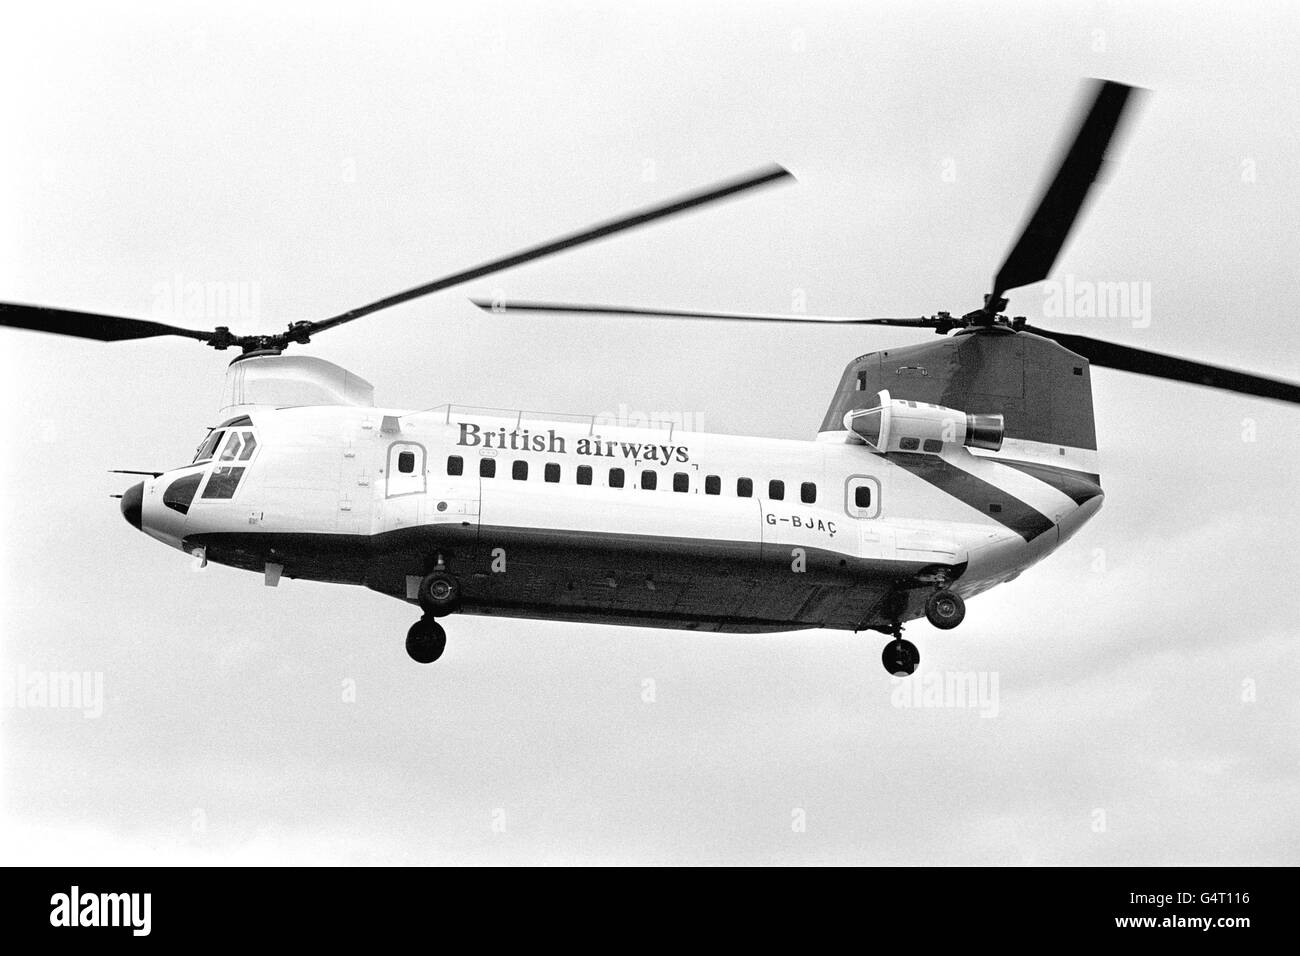 Der erste kommerzielle Hubschrauber von British Airways schwebt über dem Londoner Flughafen Gatwick. Die Boeing Vertol 234 wurde als das erste echte Hubschrauberflugzeug beschrieben, das 44 Passagiere mit vollem Airline-Trimm, vier-Gänge-Sitzen in den Mittelgängen, warmen Mahlzeiten und einer Toilette aufnehmen kann. Das Doppelrotor-Flugzeug ist hauptsächlich für den Einsatz zwischen Aberdeen und den weiter entfernten Nordsee-Ölplattformen bestimmt Stockfoto